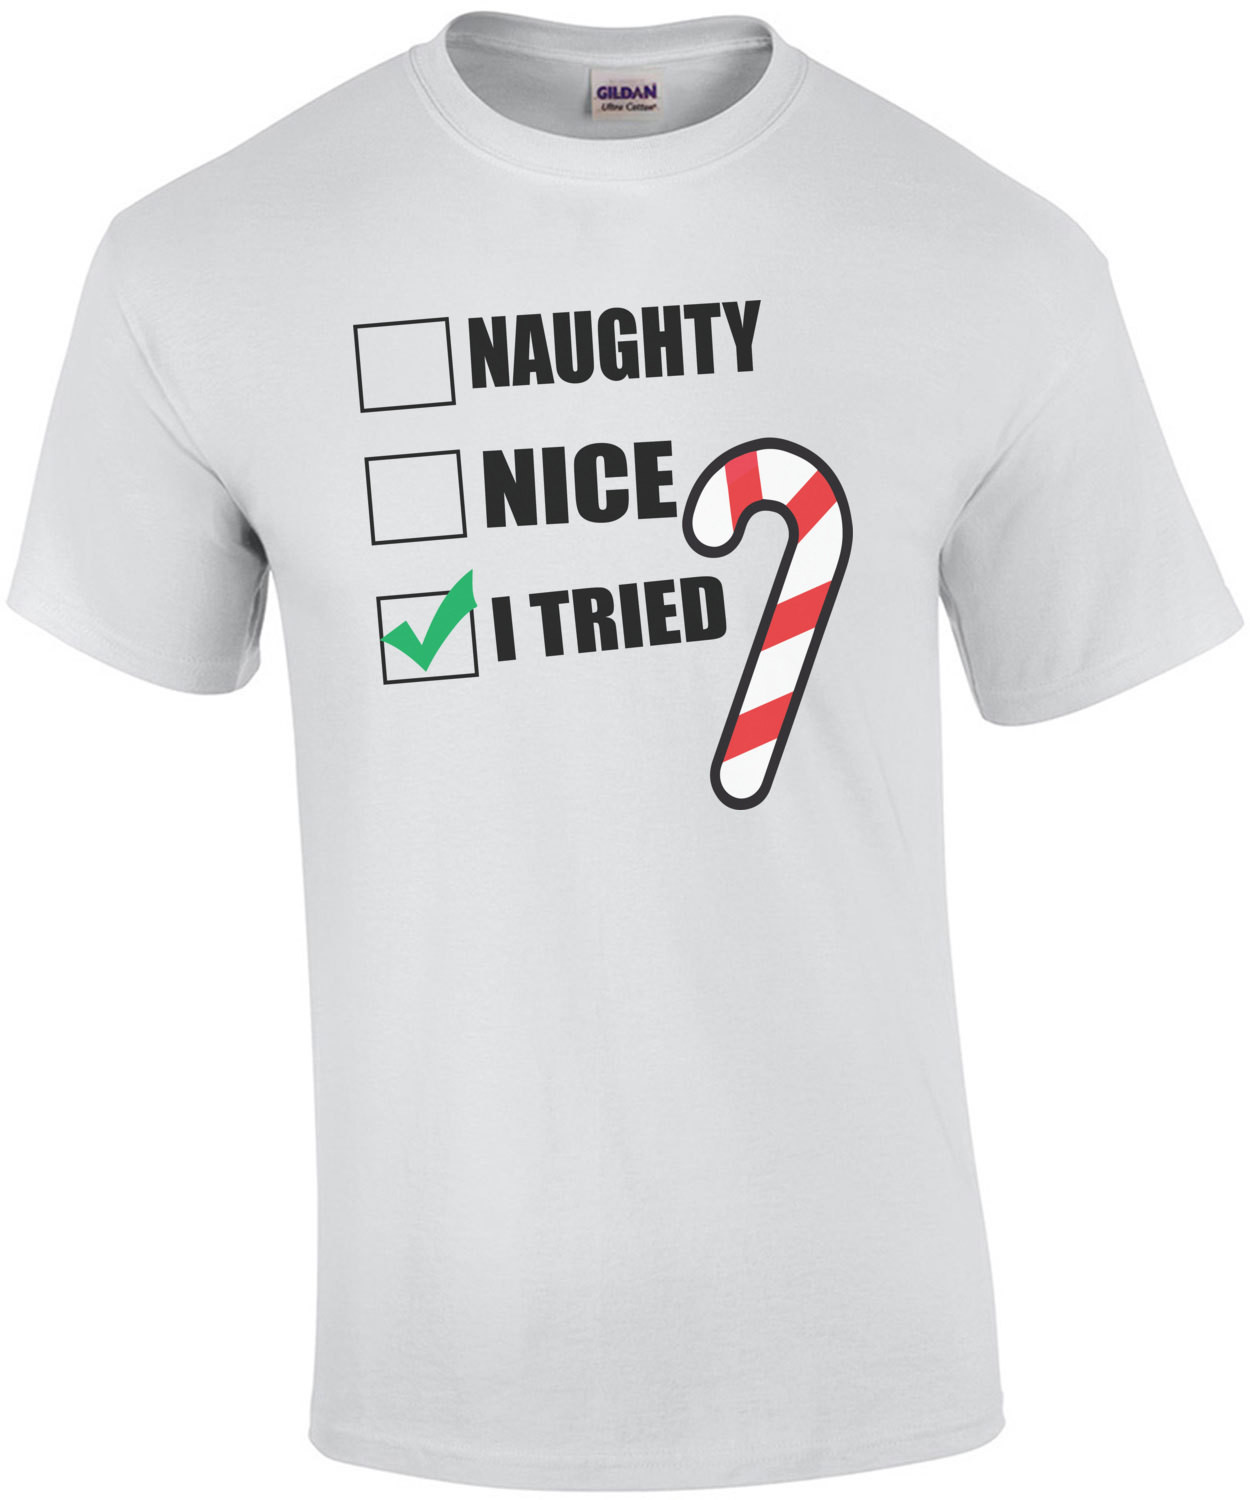 Naughty. Nice. I Tried. Funny Christmas T-Shirt